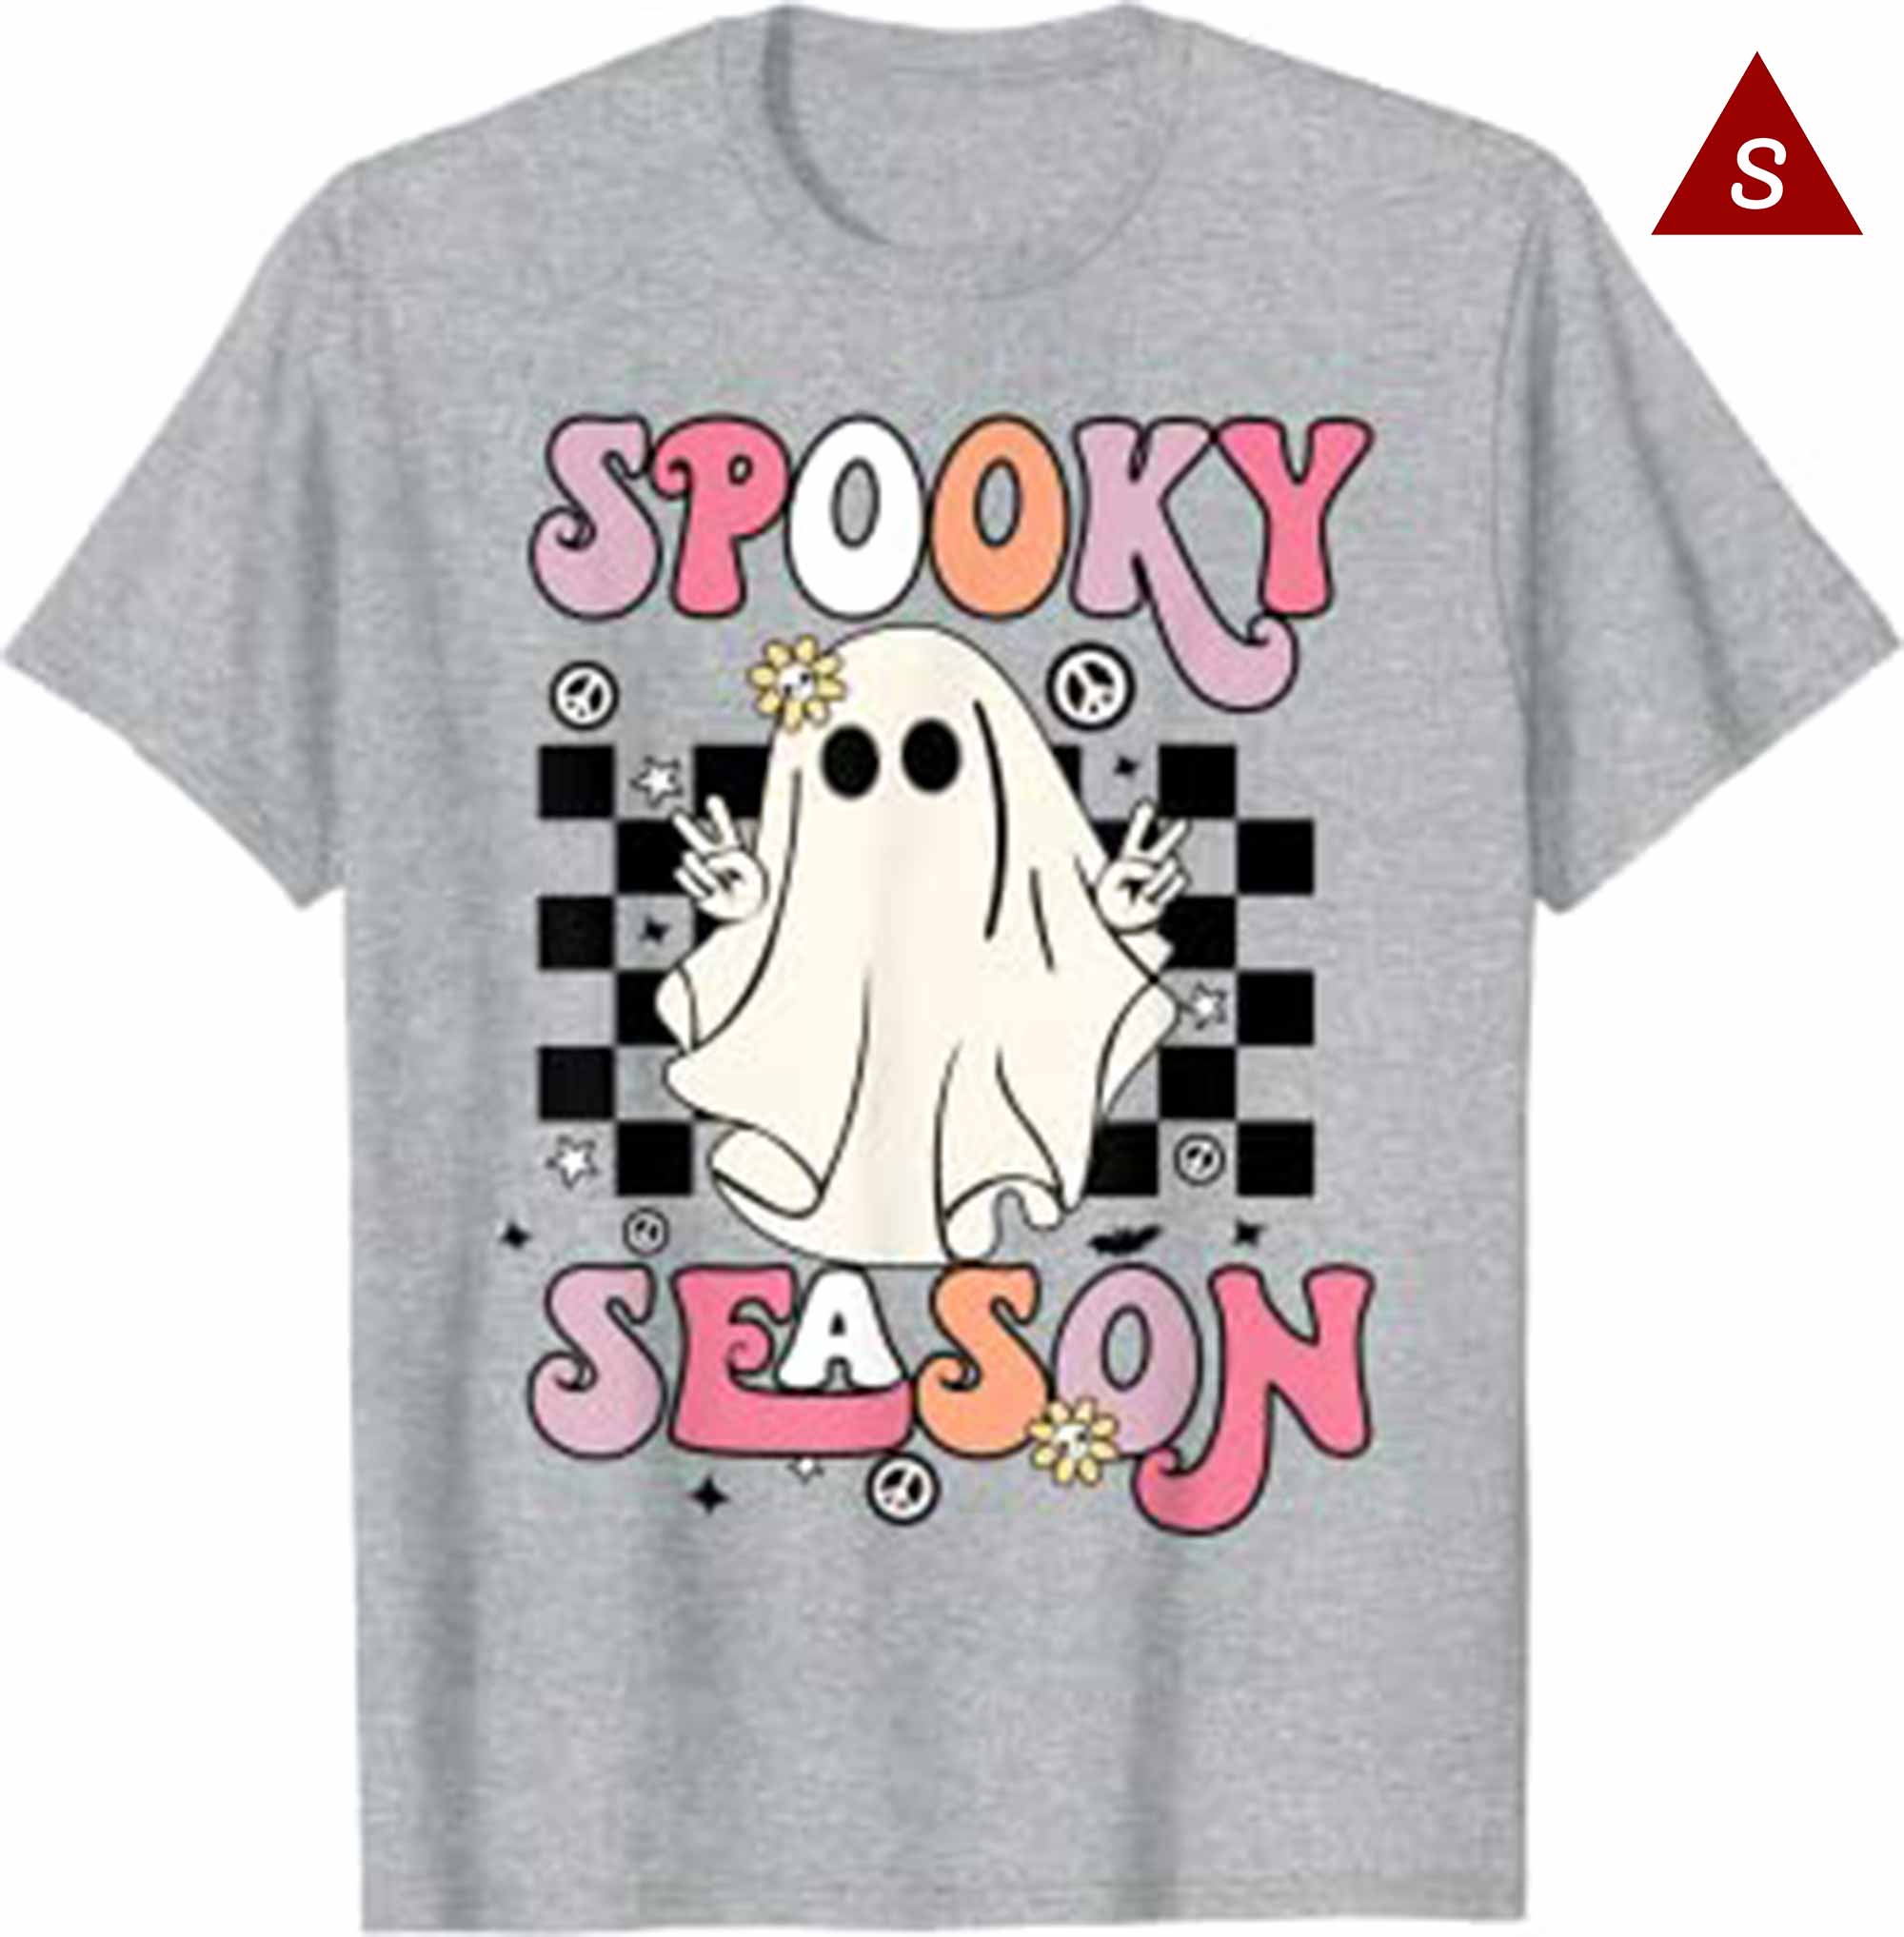 Retro Hippie Halloween Cute Ghost Spooky Season Women Kids T Shirt